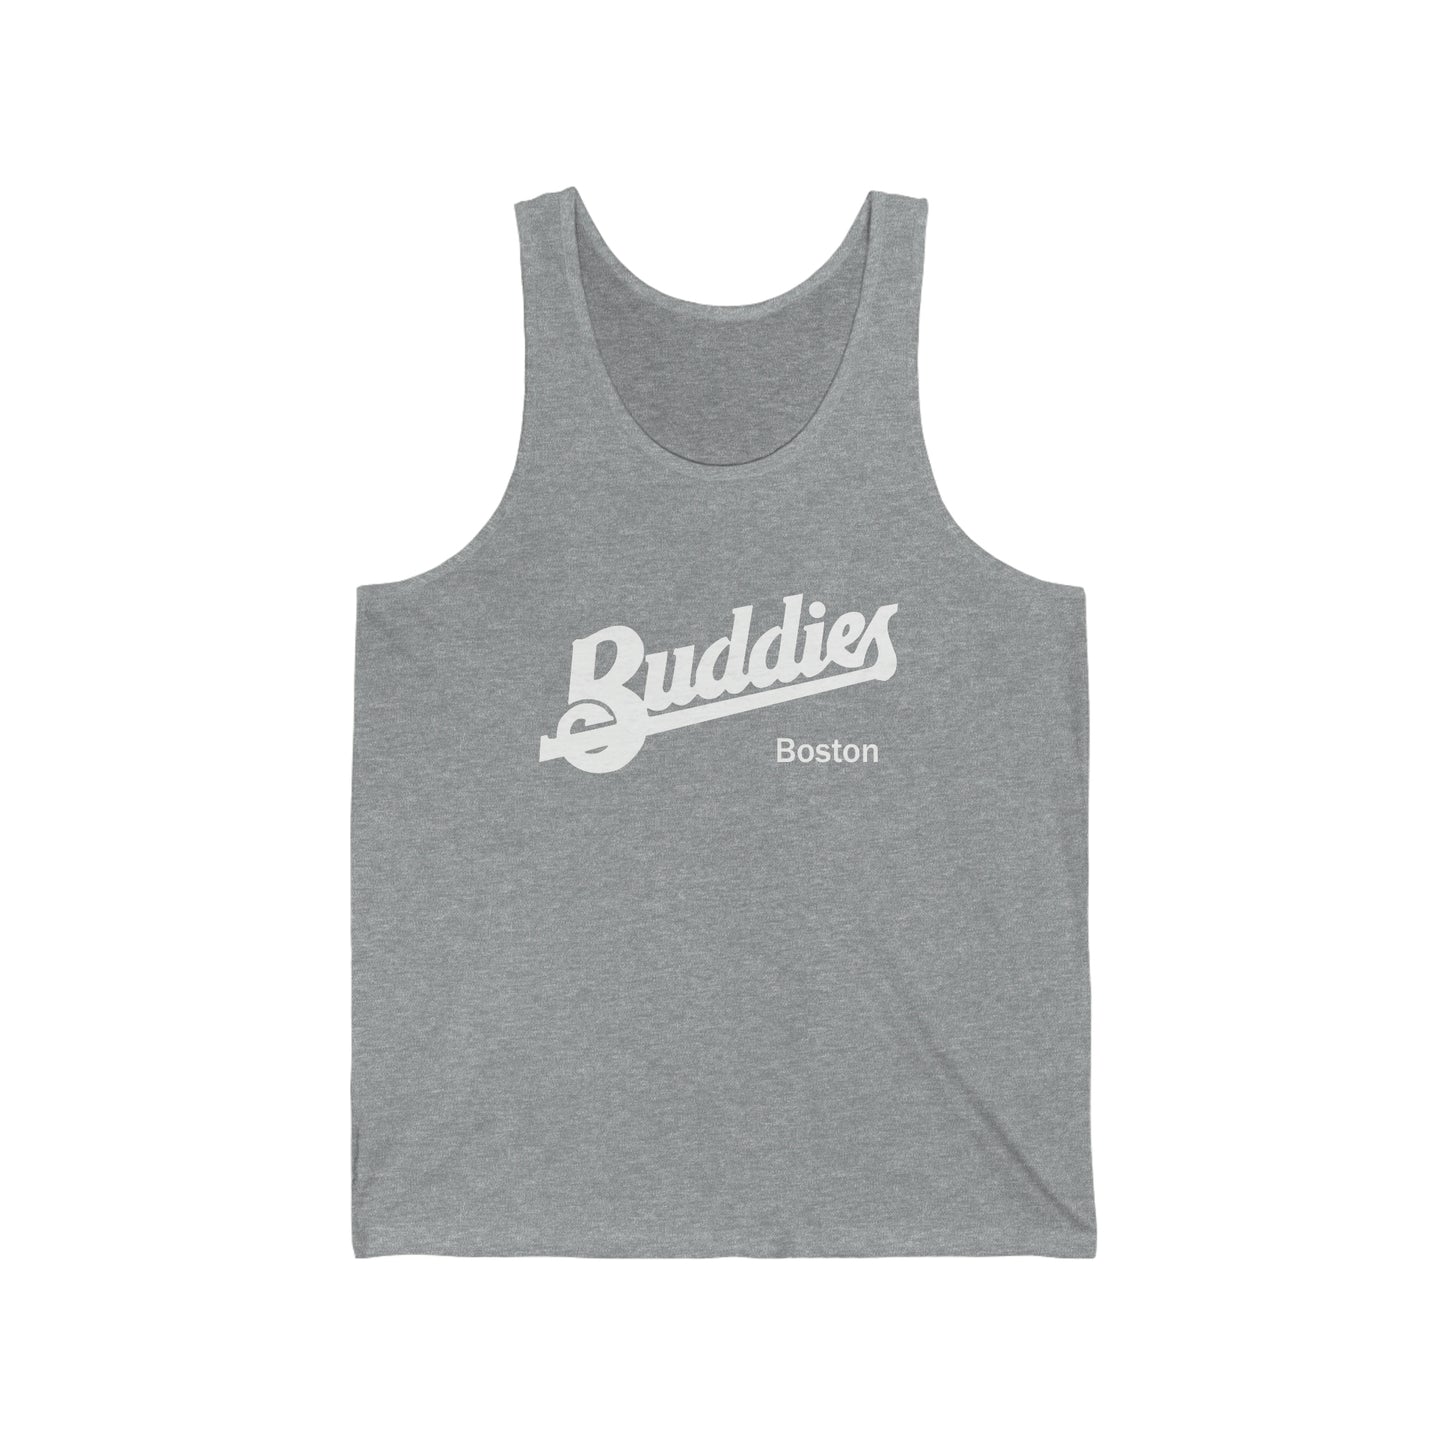 Buddies Gay Bar Boston - Camiseta sin mangas para adulto